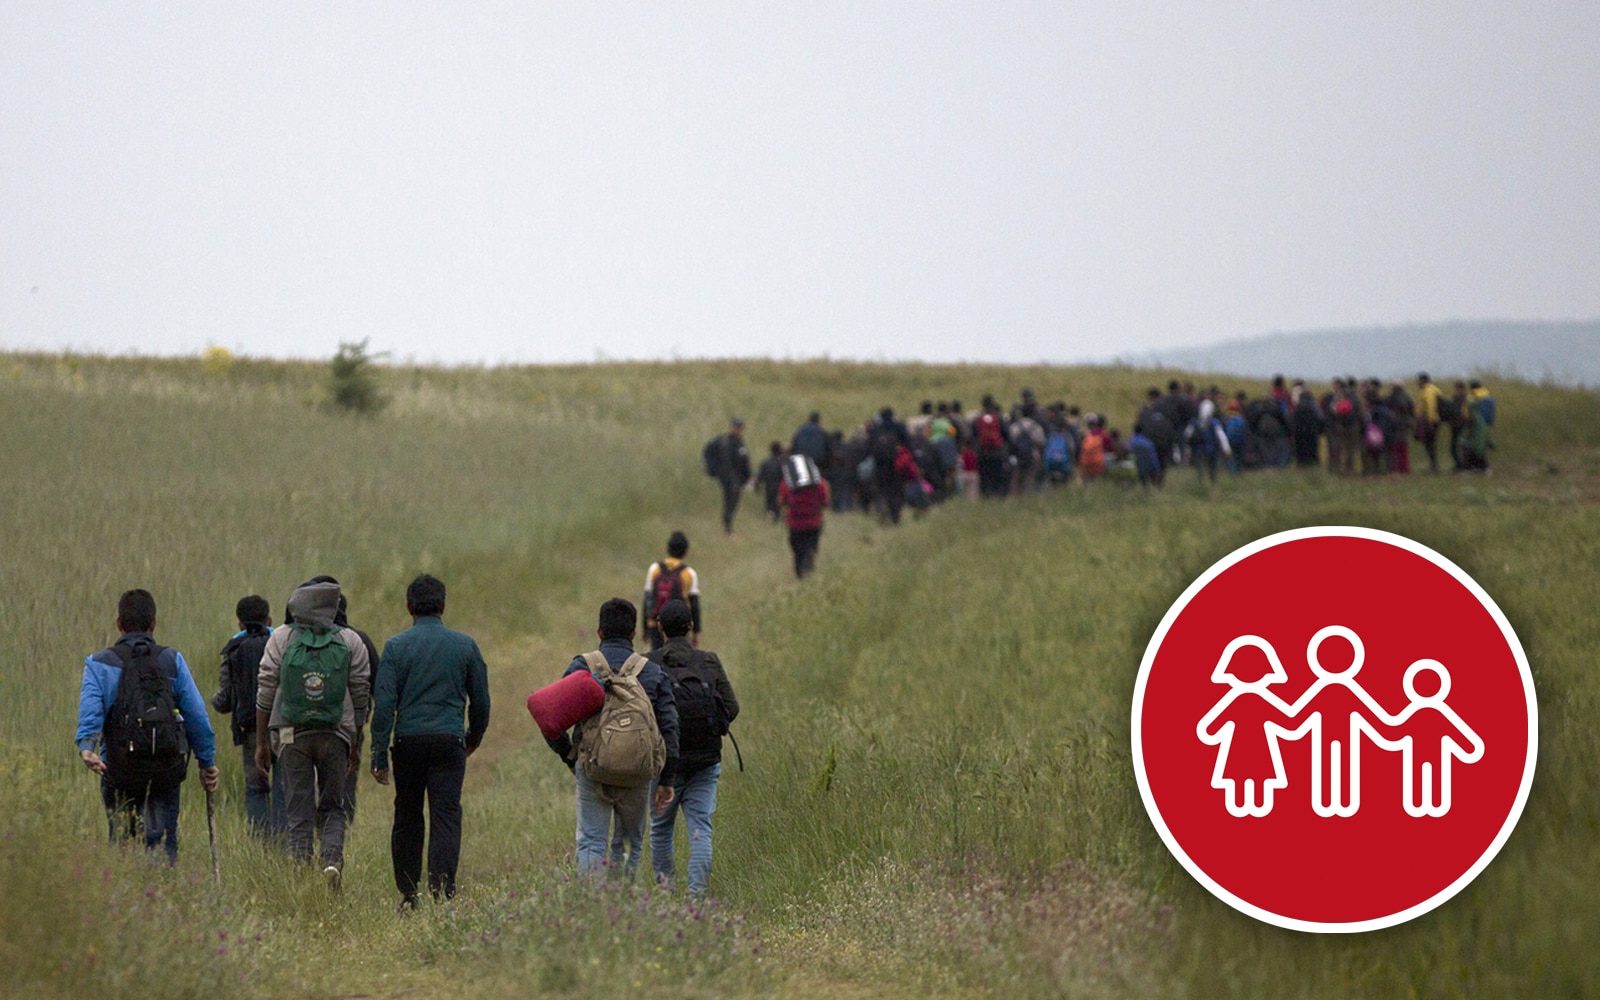  A group of refugees walks across a field through dense grass.